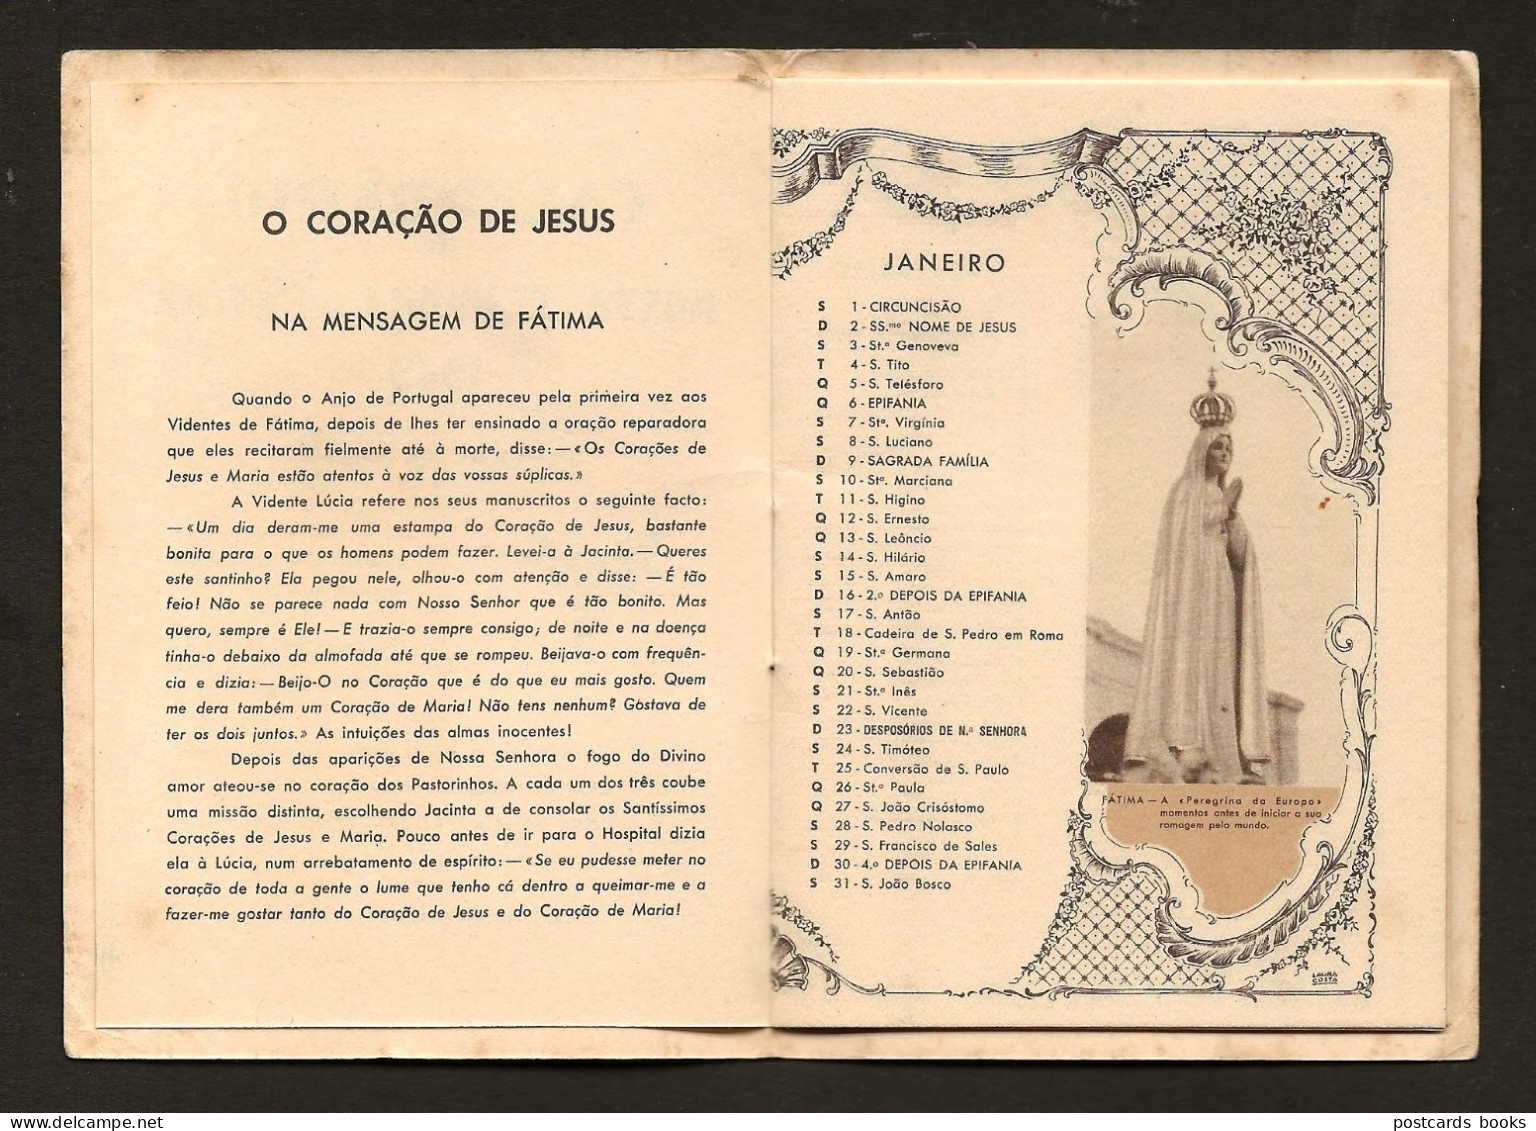 1949 Livrinho CALENDARIO Nossa Senhora De FATIMA. Booklet 16 Pages Calendar Our Lady Imprimatur LEIRIA 1948 Portugal - Klein Formaat: 1941-60